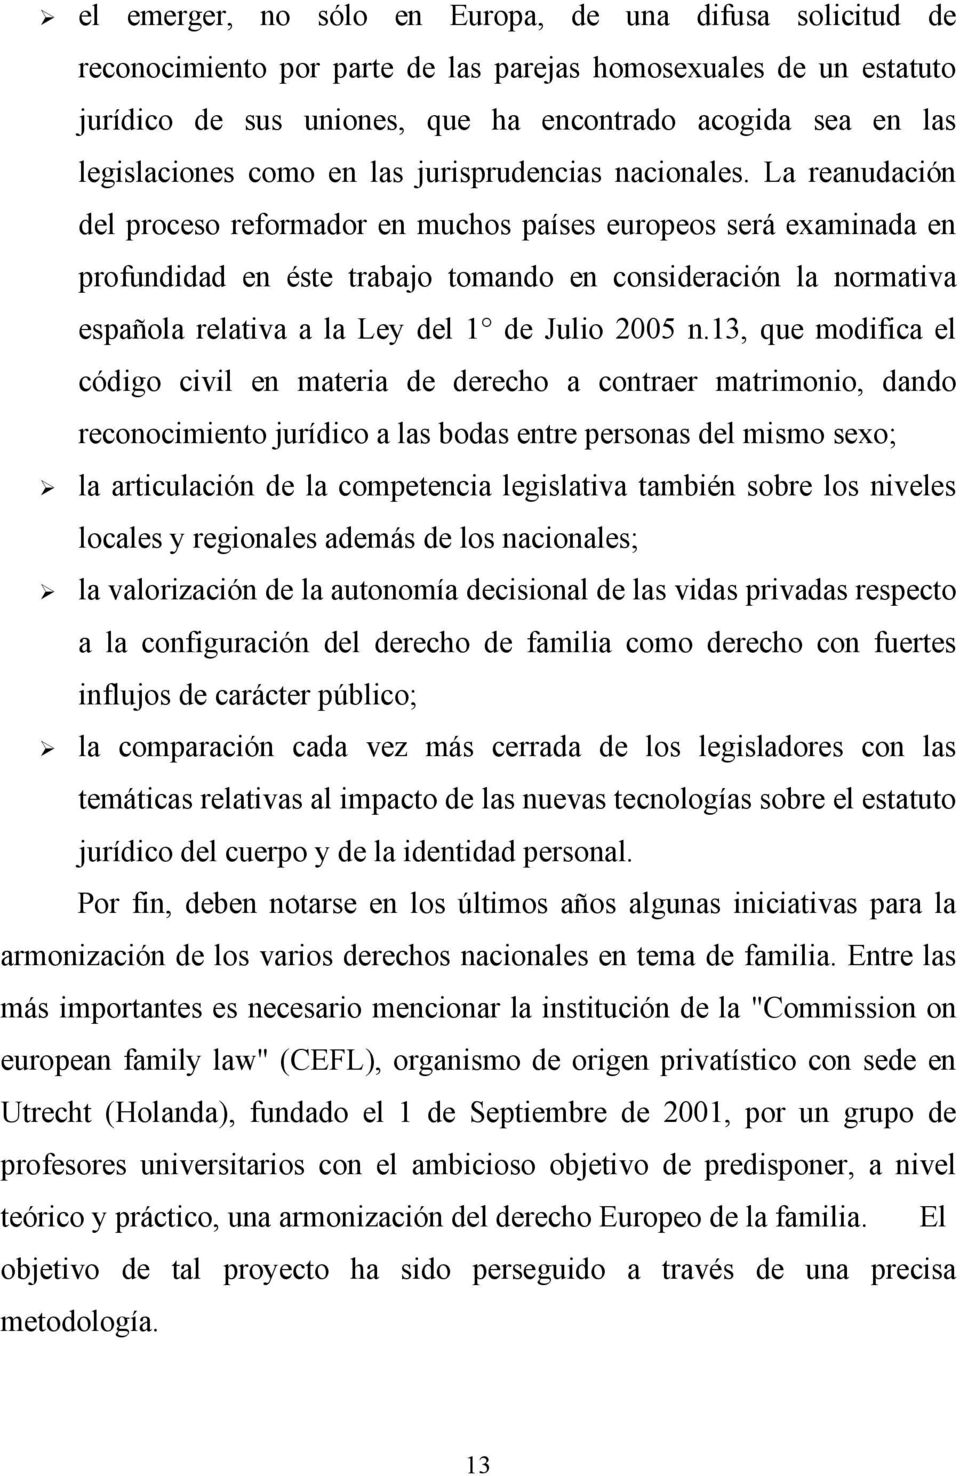 La reanudación del proceso reformador en muchos países europeos será examinada en profundidad en éste trabajo tomando en consideración la normativa española relativa a la Ley del 1 de Julio 2005 n.